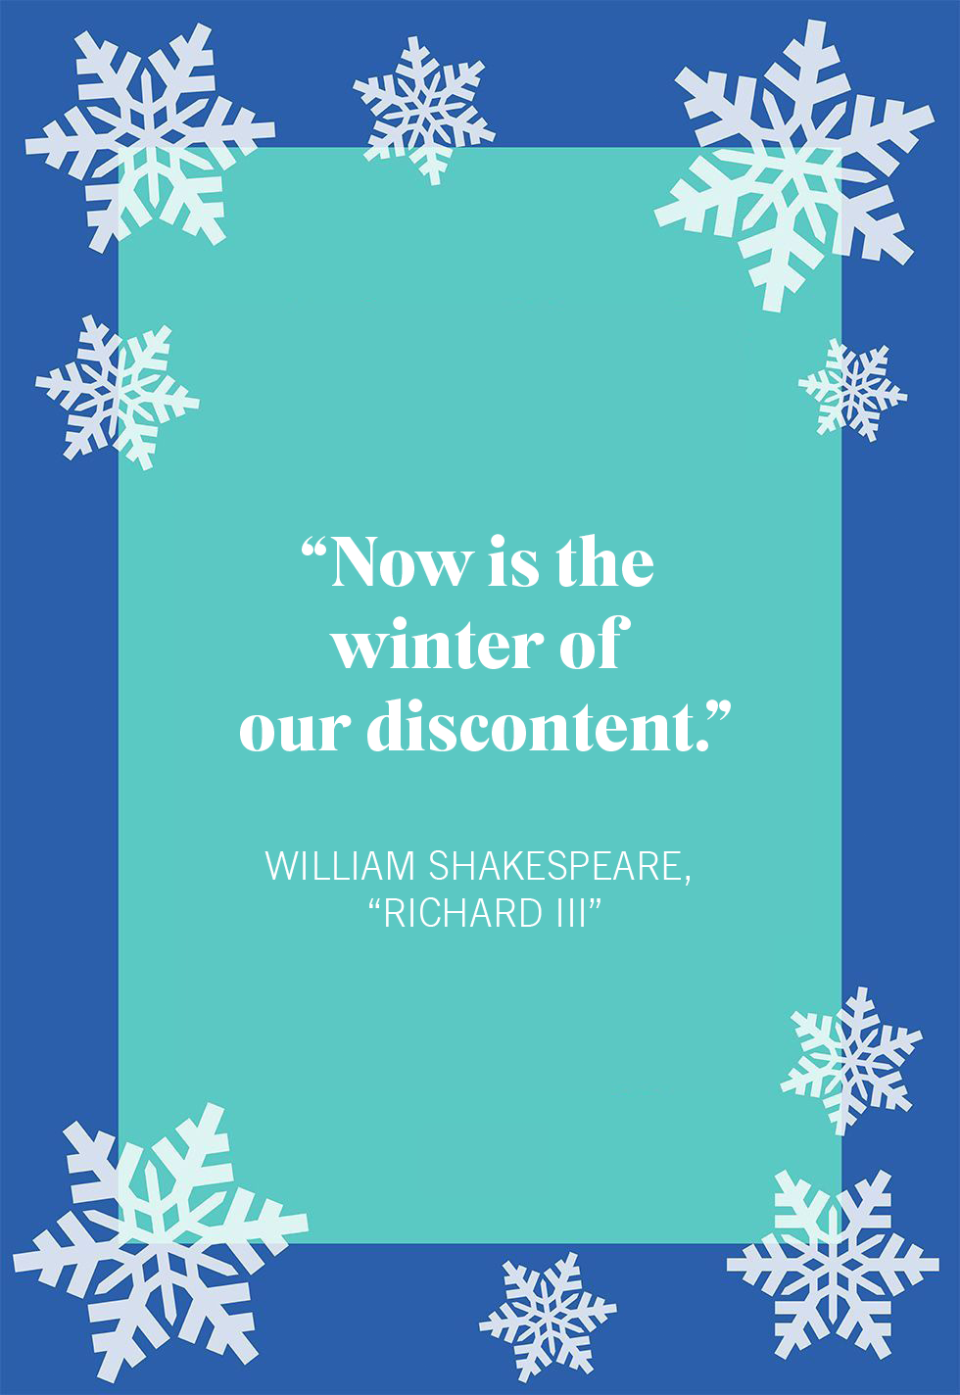 William Shakespeare,  “Richard III”